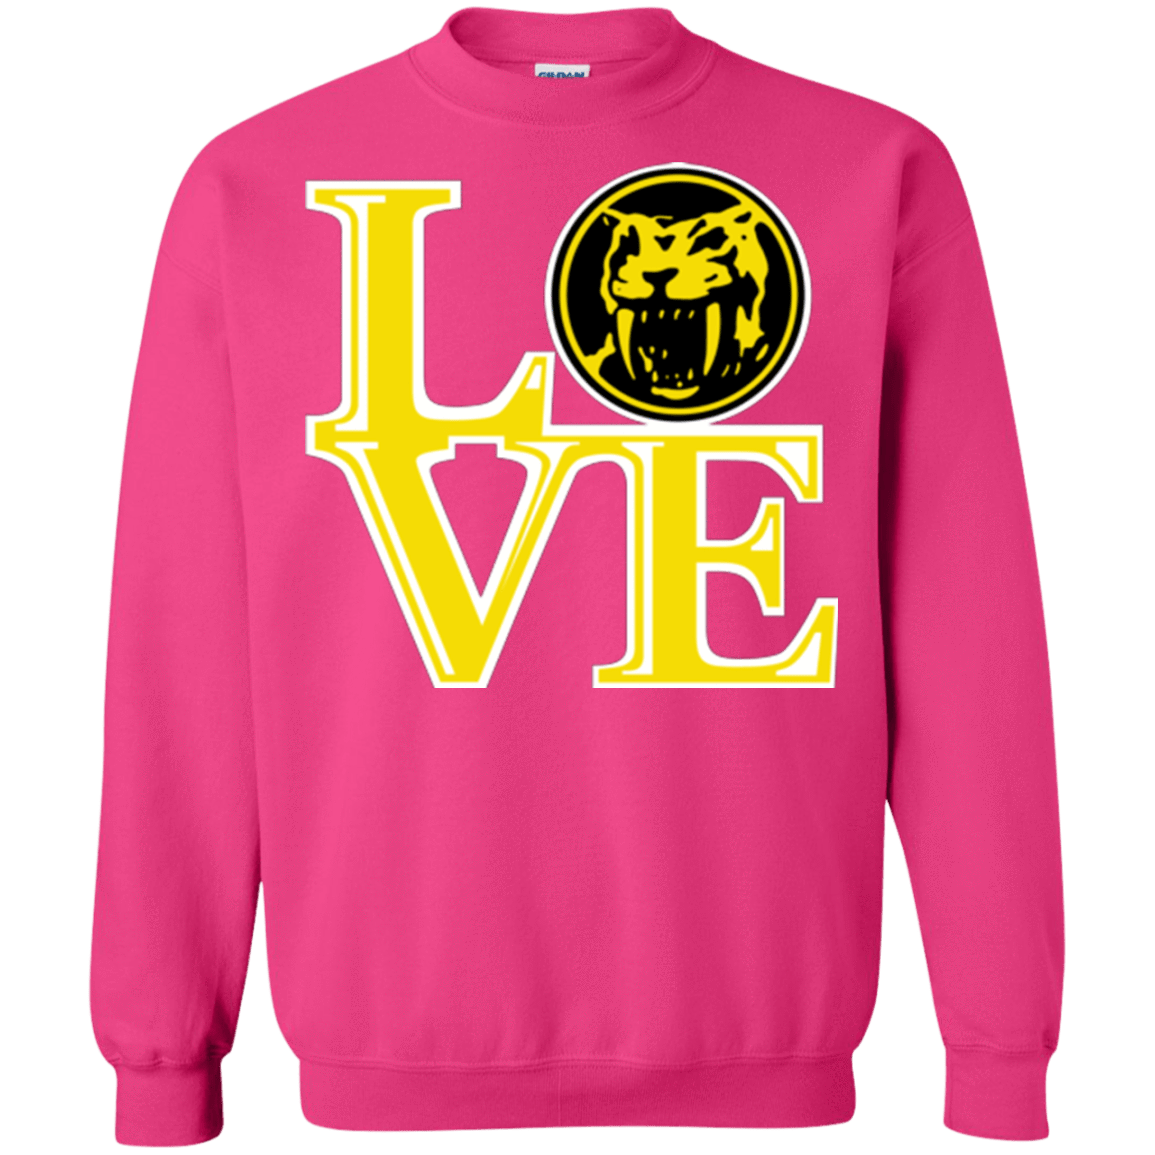 Sweatshirts Heliconia / Small Yellow Ranger LOVE Crewneck Sweatshirt